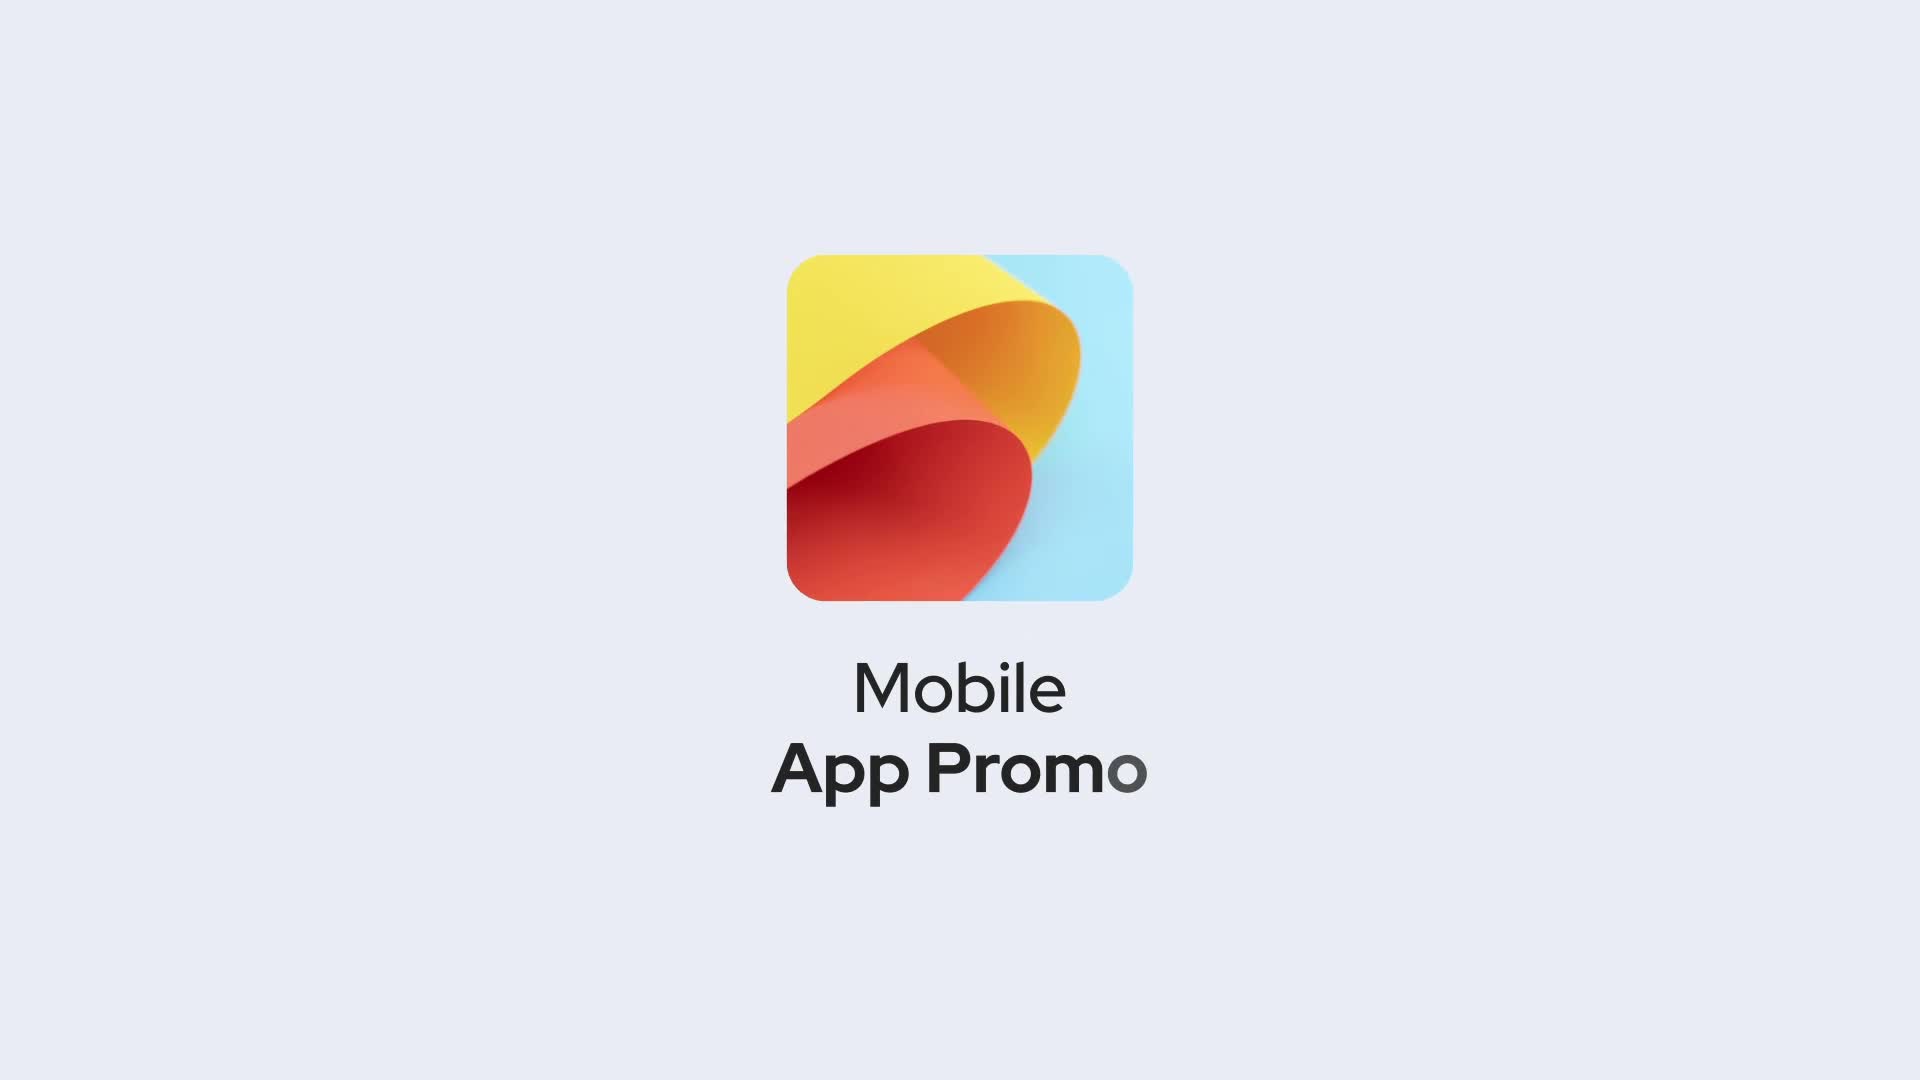 Mobile App Promo for Premiere Pro Videohive 33053696 Premiere Pro Image 1